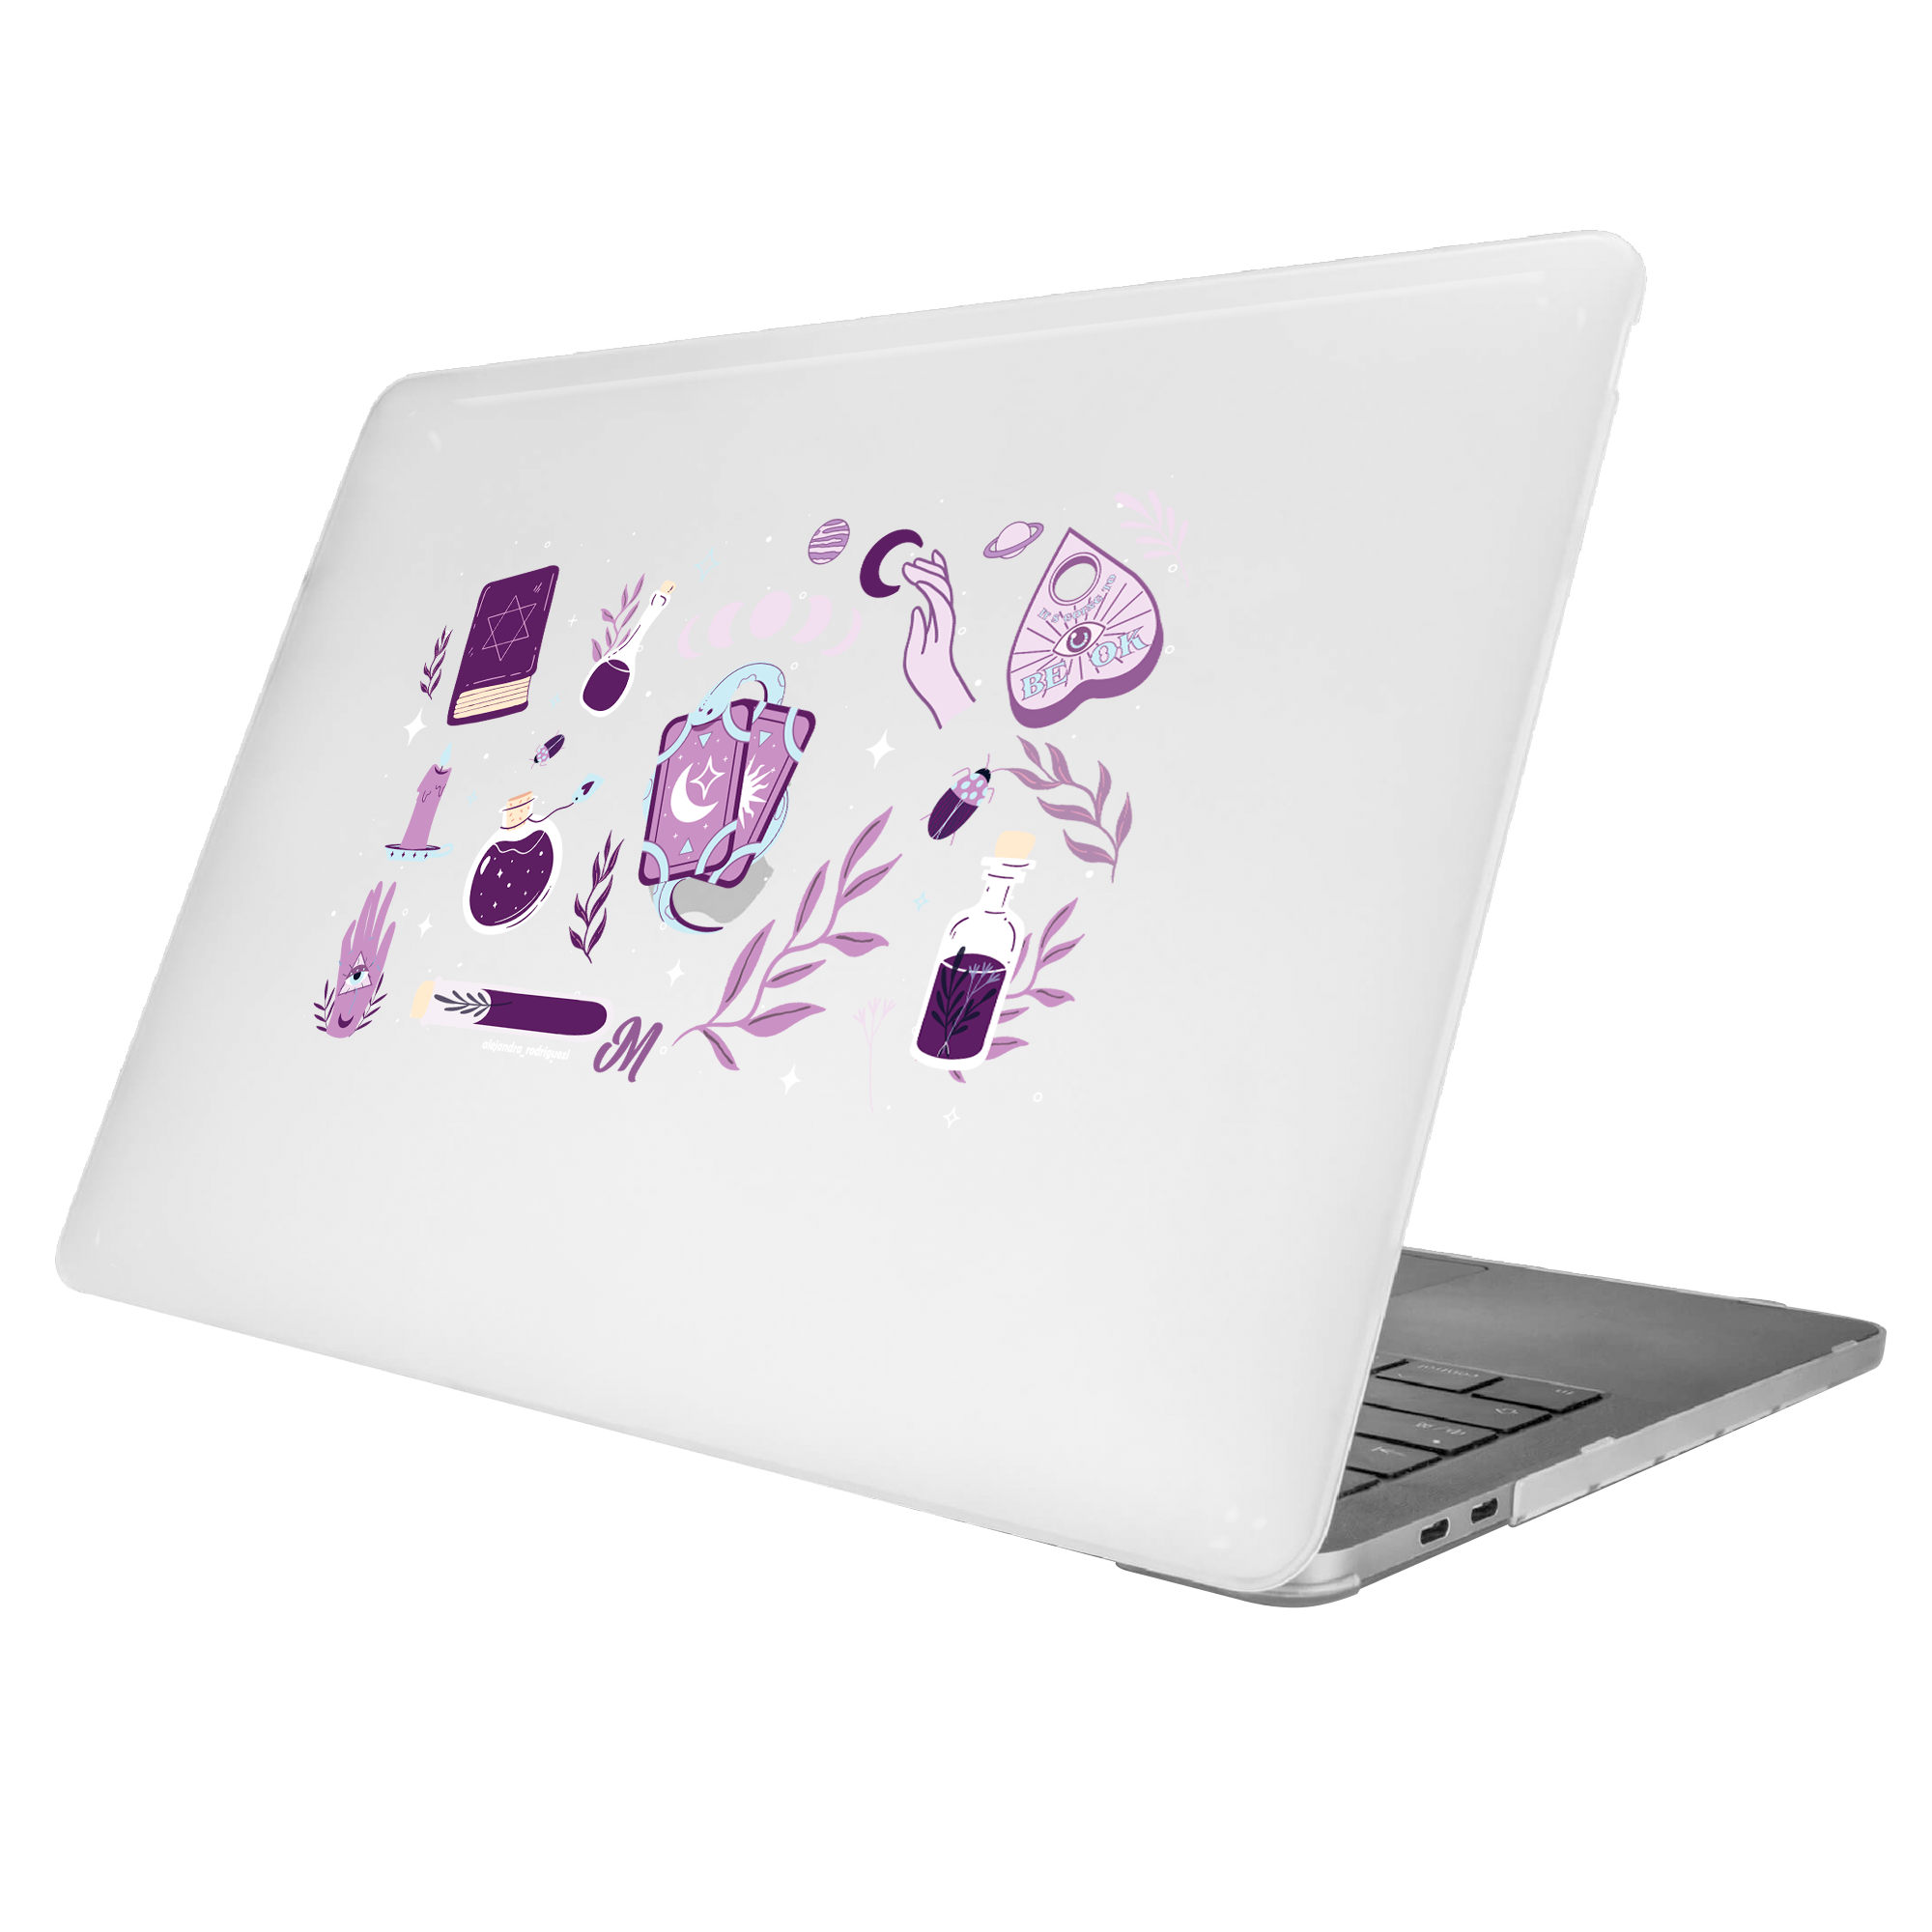 Mística MacBook Case - Mandala Cases